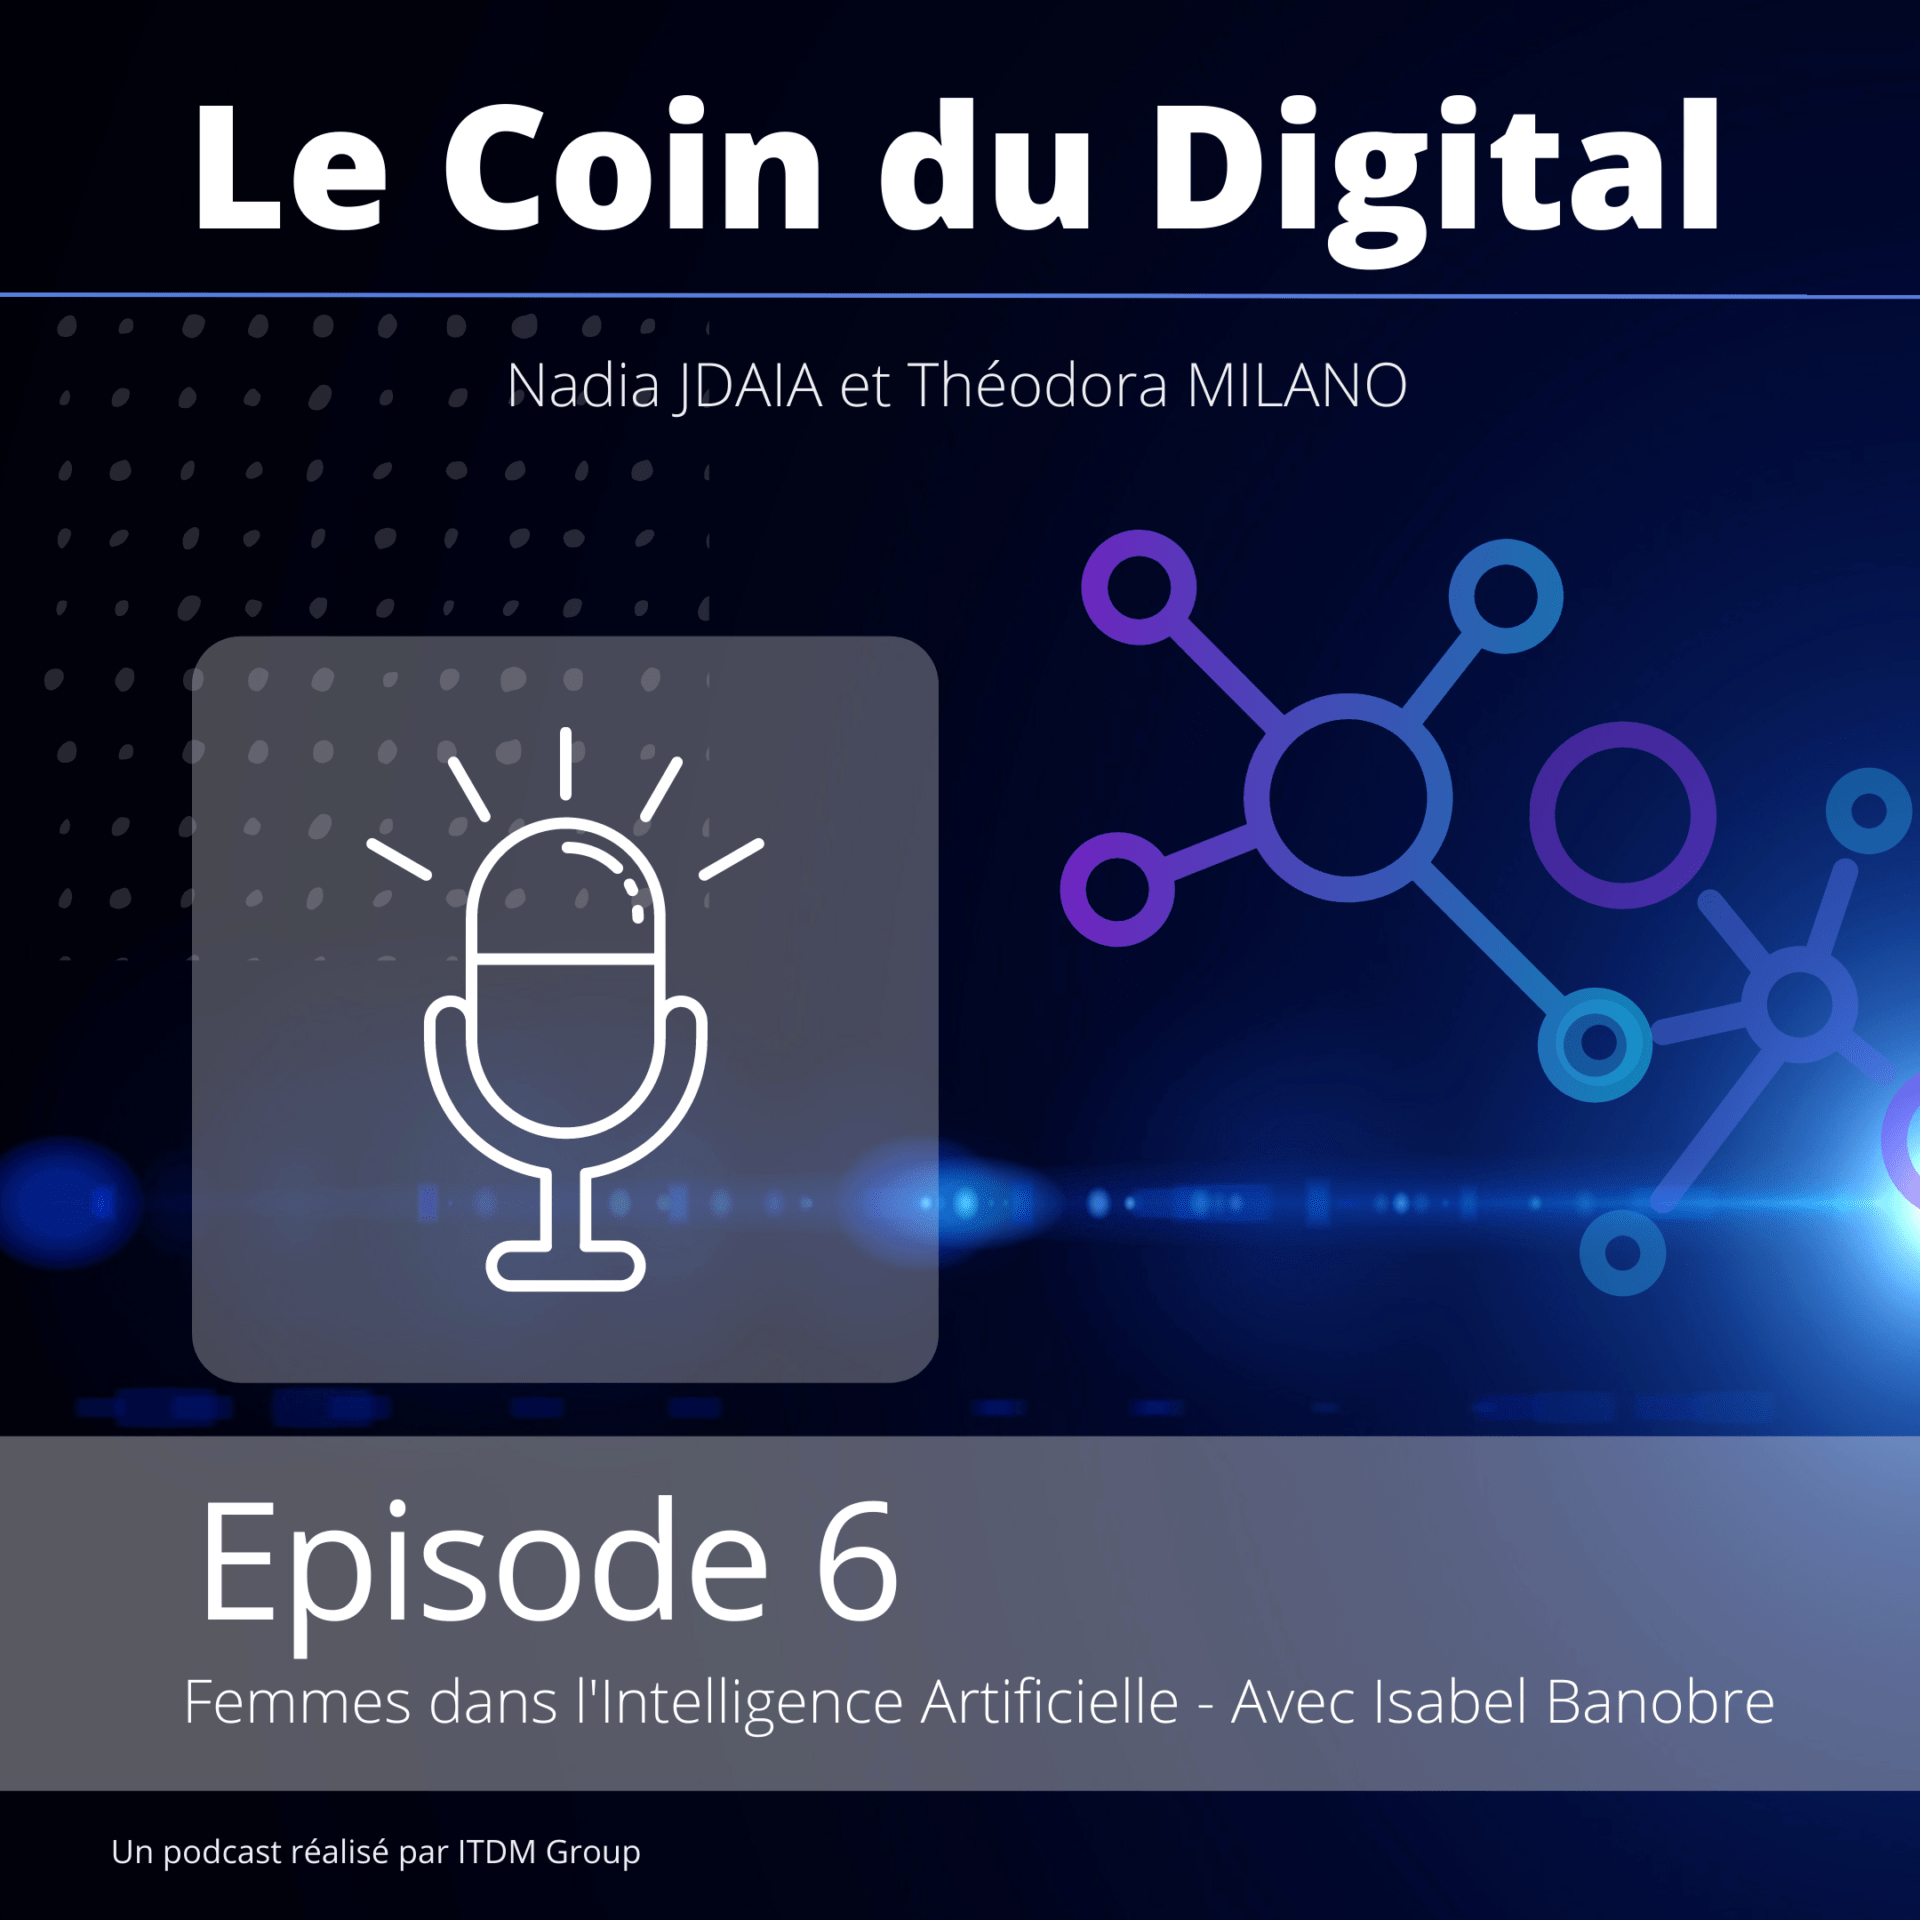 Podcast Femmes et IA miniature bleue Le coin du digital Episode 6